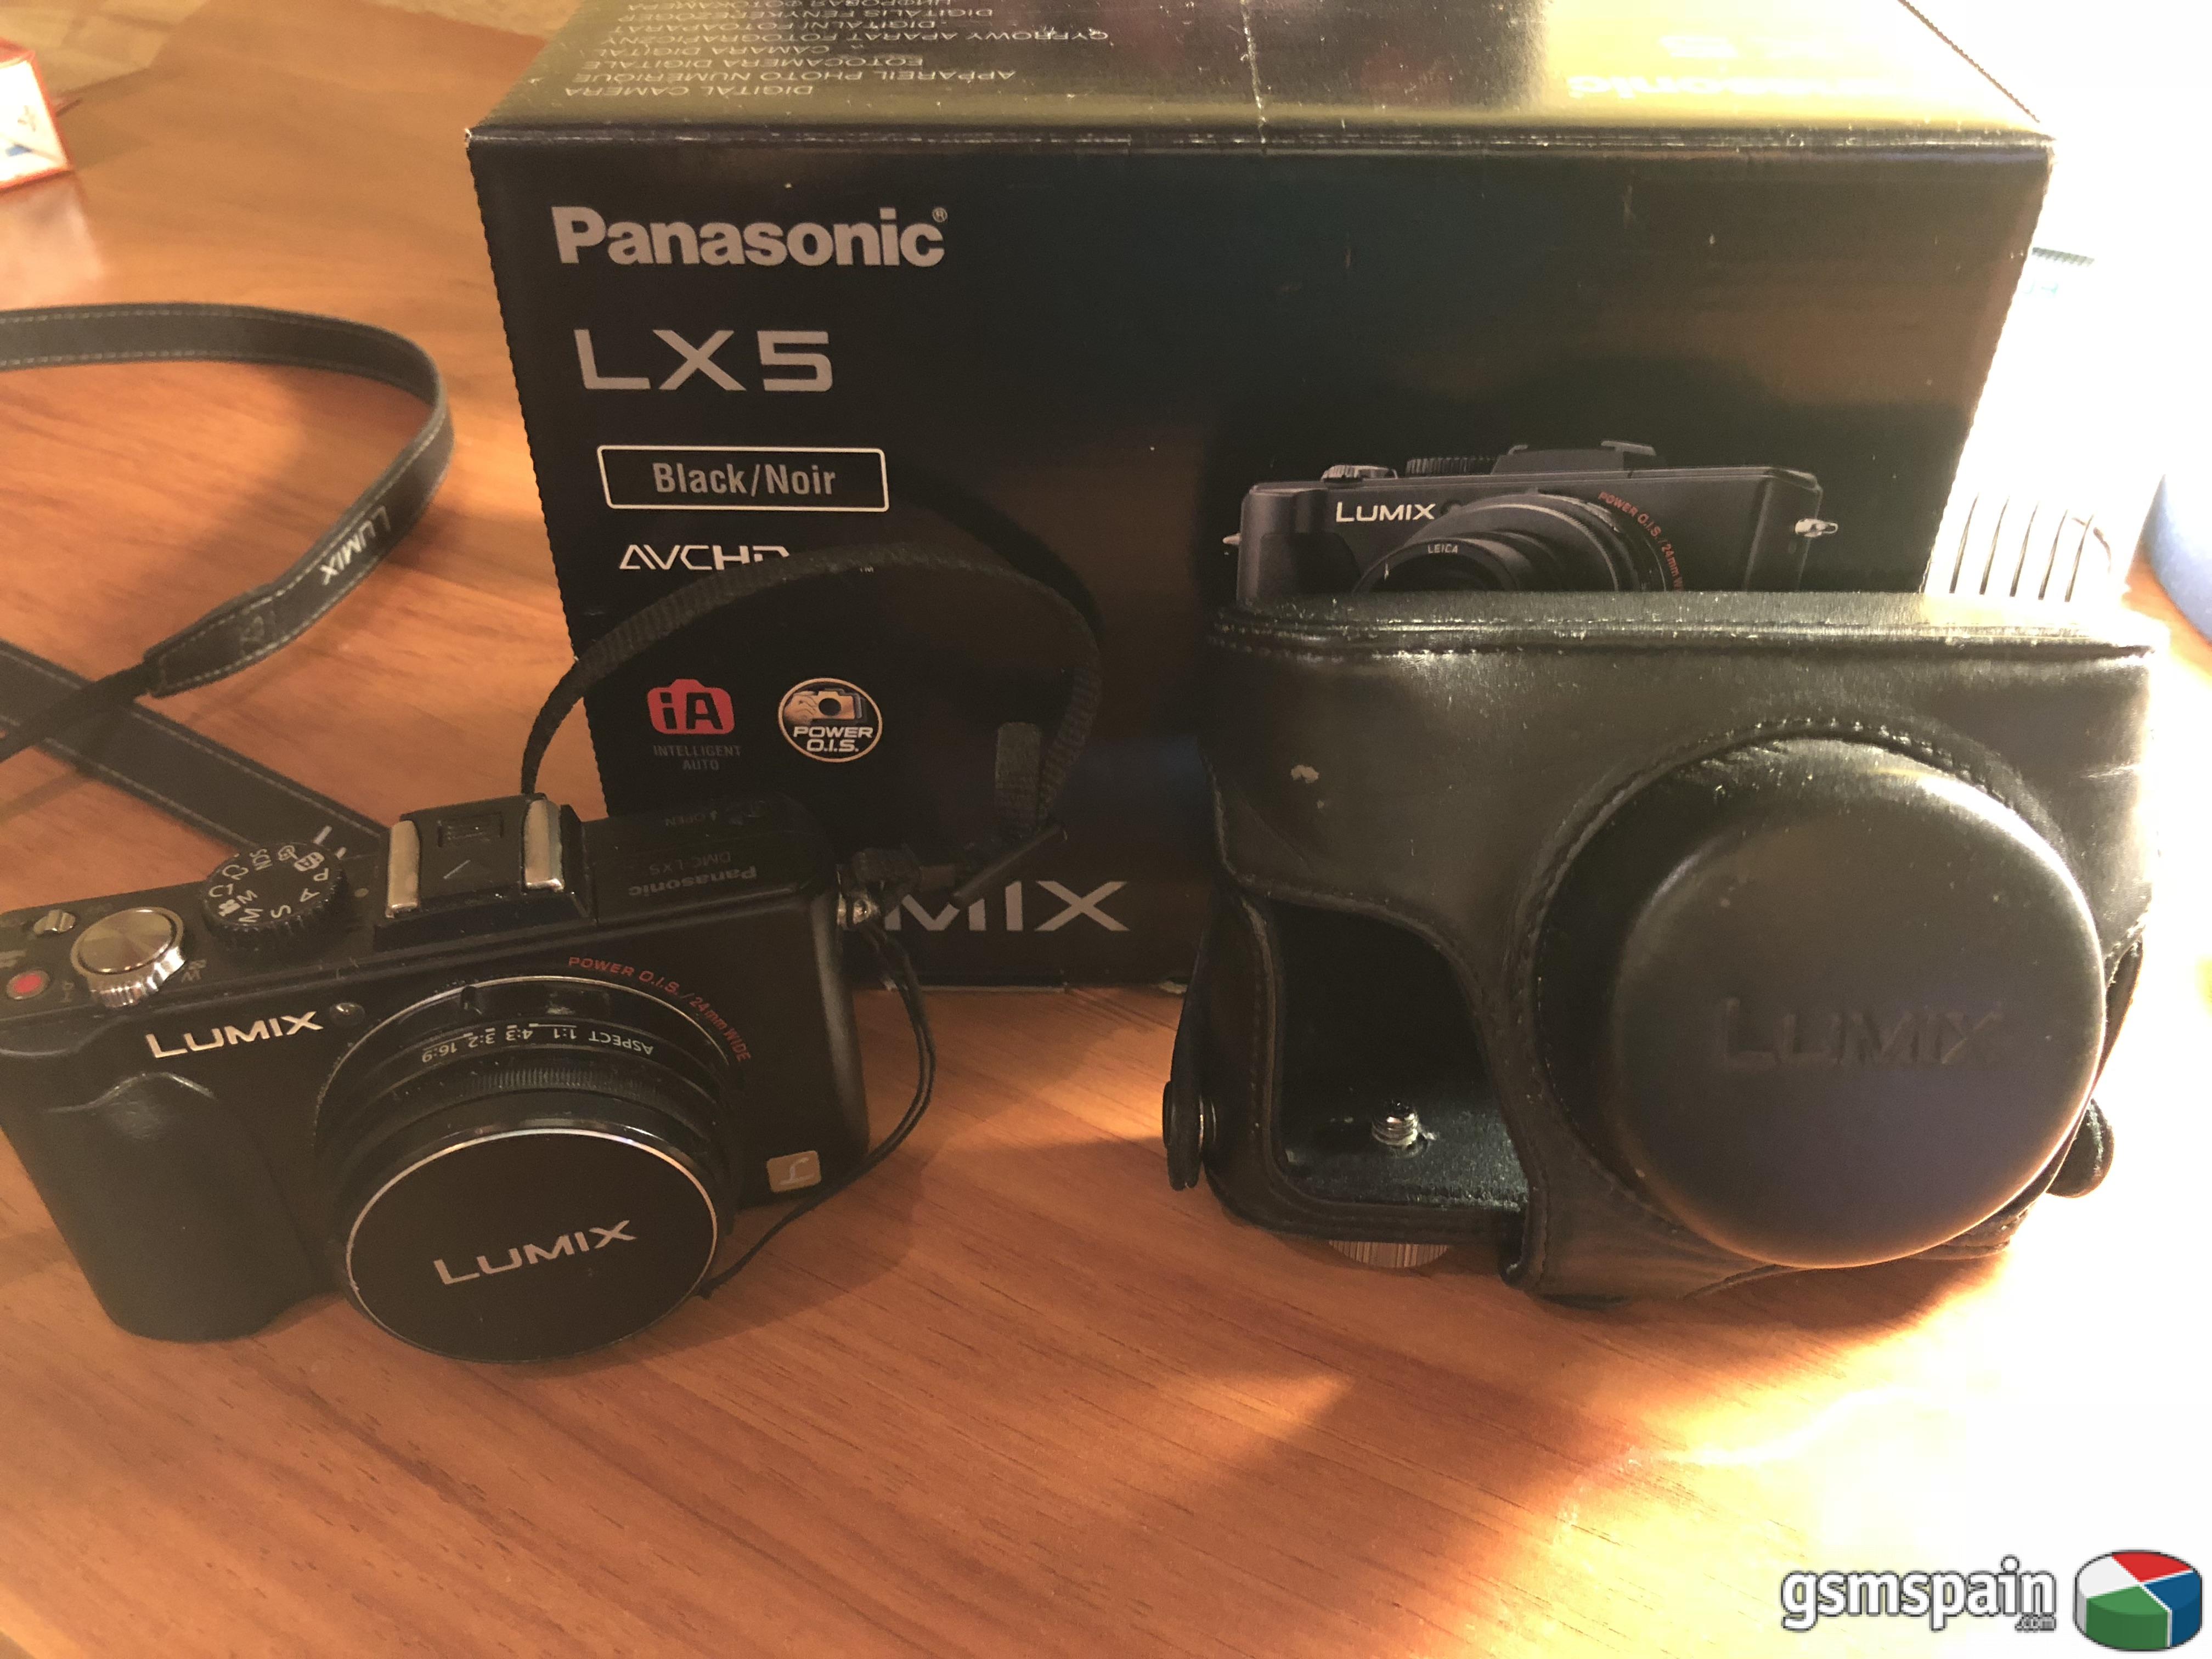 [VENDO] Cmara de fotos Panasonic Lx5, funda original de piel y tarjeta SD de 8GB por 90